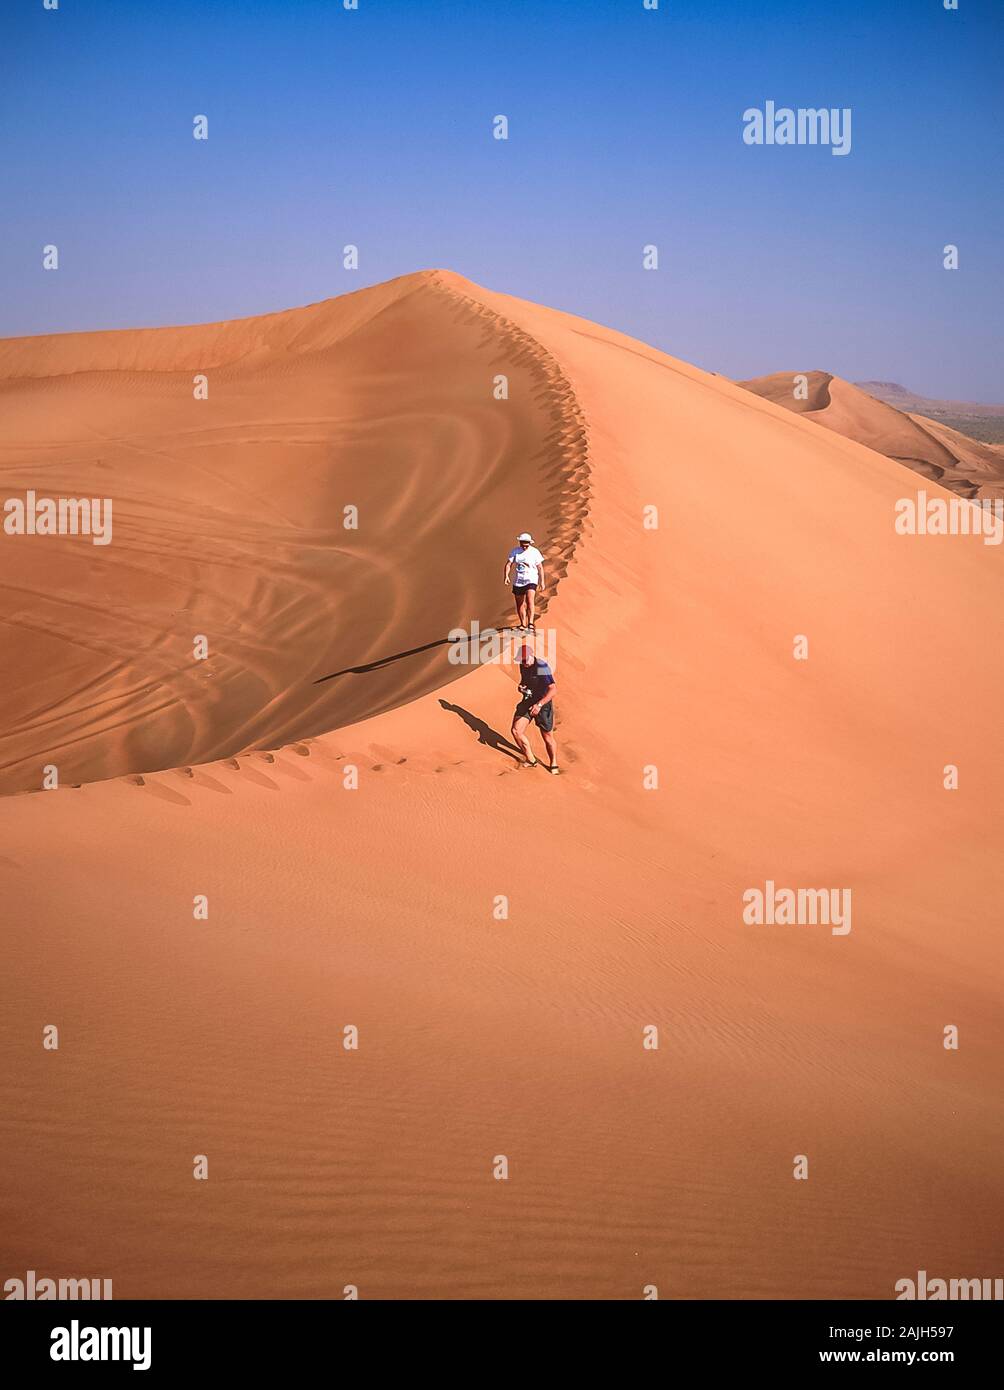 Dubai. I turisti europei si godono il bellissimo paesaggio desertico di dune di sabbia soffiate dal vento naturale vicino al villaggio di al Dhaid sulla strada tra la città di Dubai e la città rurale fortezza oasi di Hatta Foto Stock